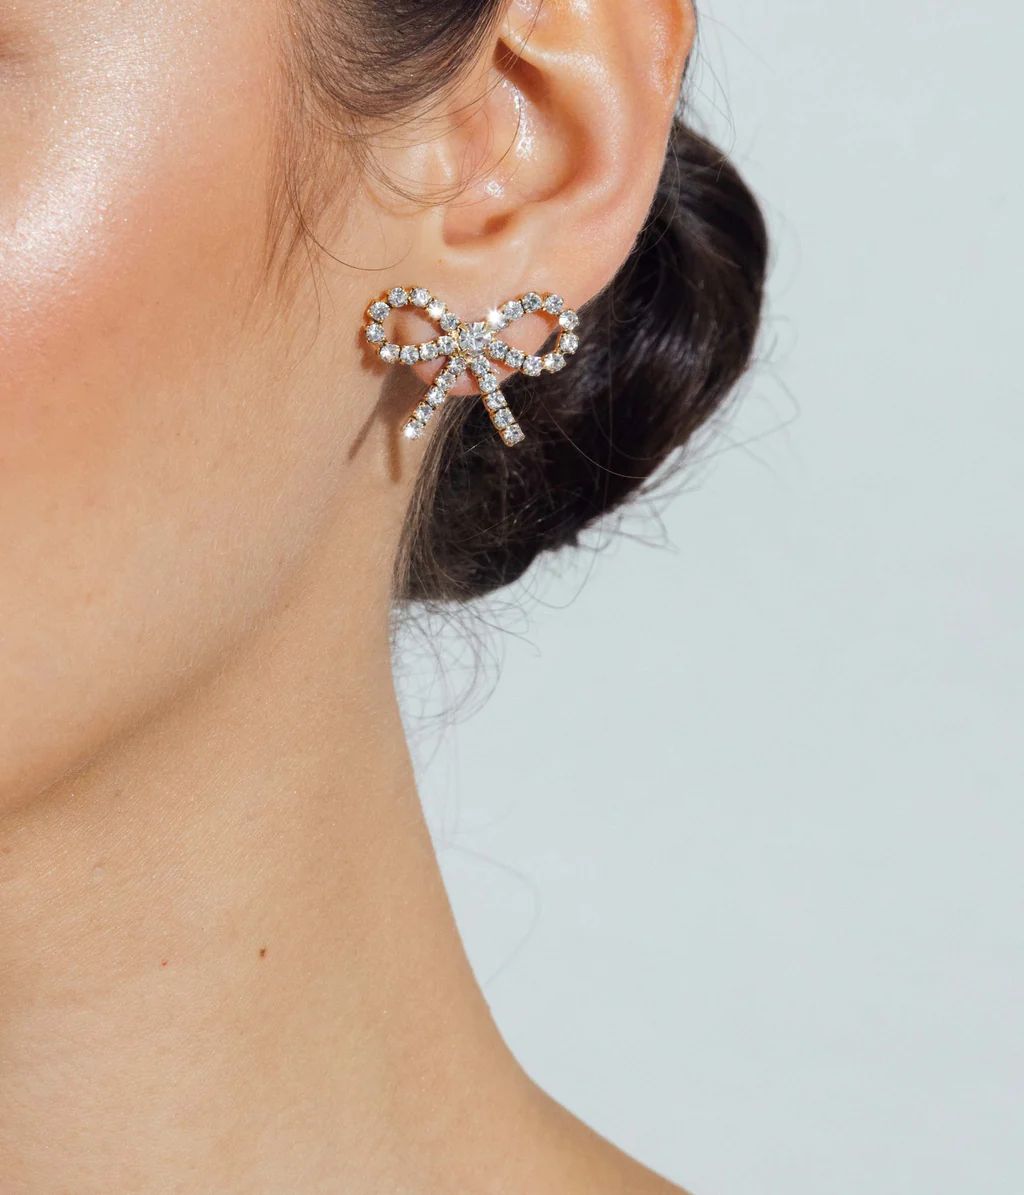 London Bow Earrings | Loren Hope Designs